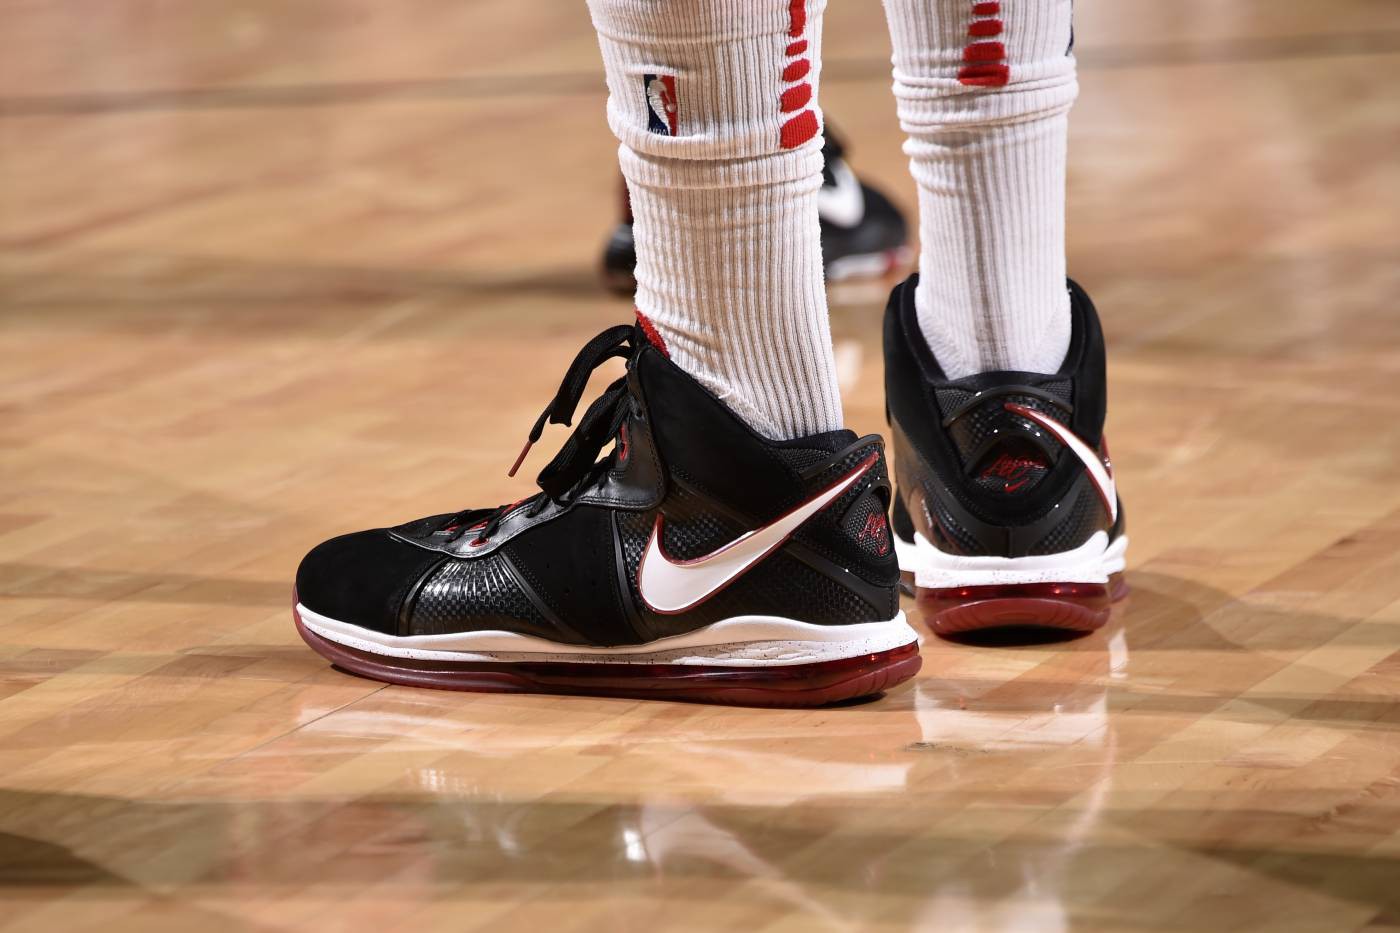 Chi tiết và đầy đủ các mẫu giày khủng của Thánh giày P.J. Tucker đã mang tại NBA Playoffs 2018 - Ảnh 18.